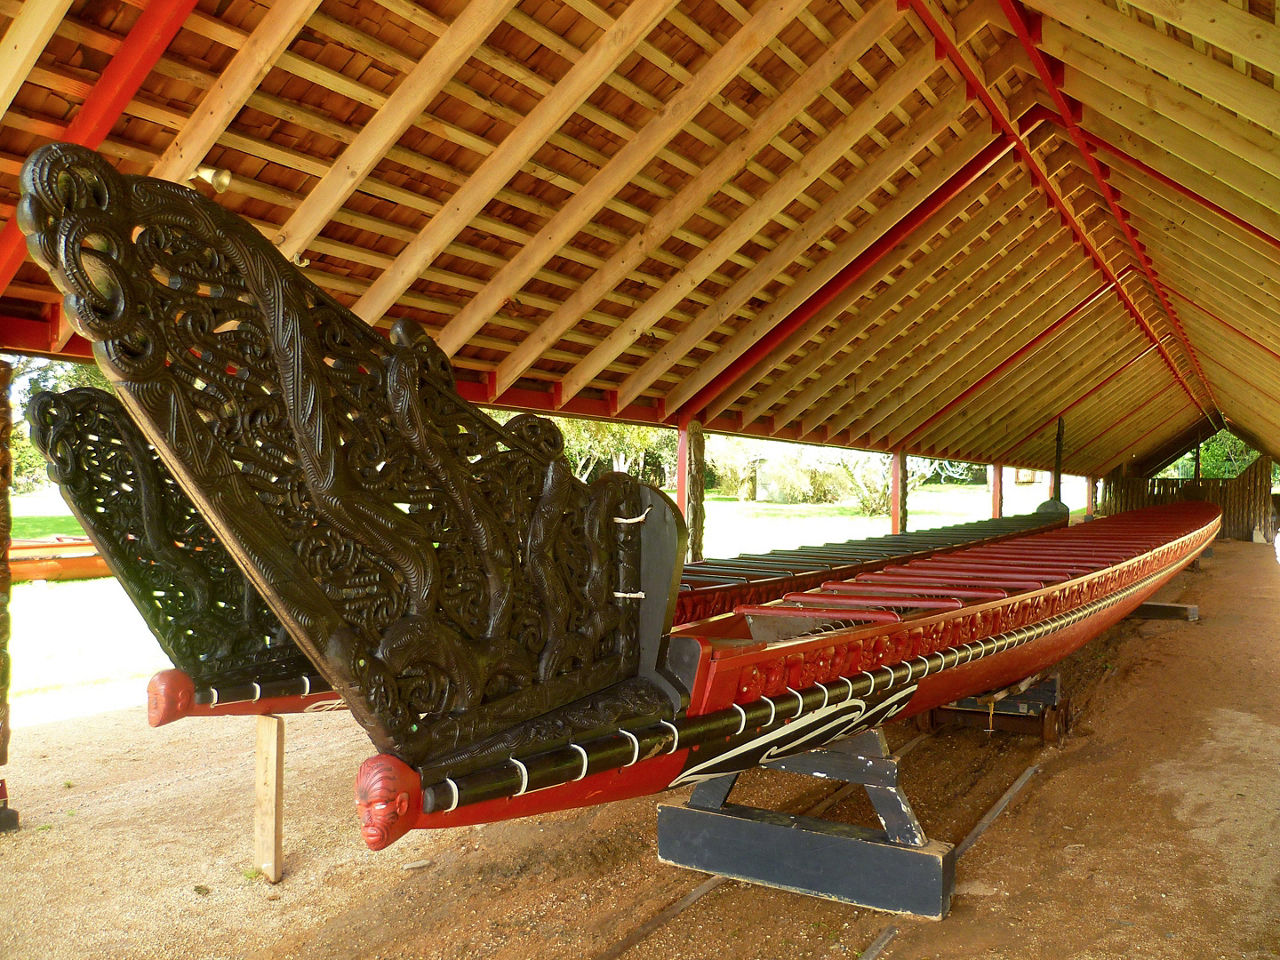 Close up of a maori canoe at Waitangi Treaty Grounds in New Zealand